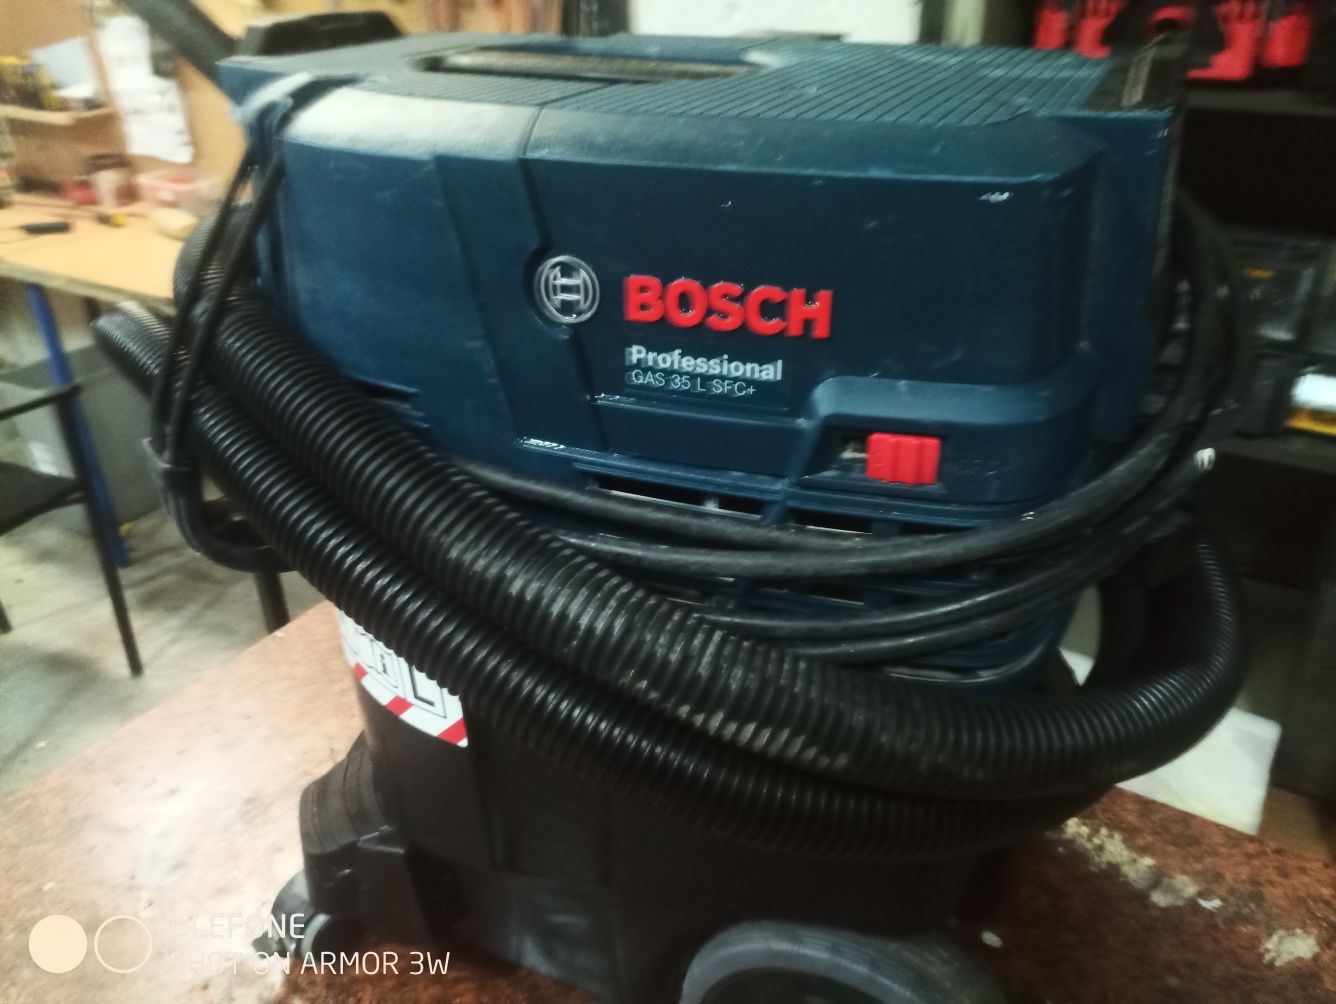 Bosch gas 35l  sfc+  profesjonal